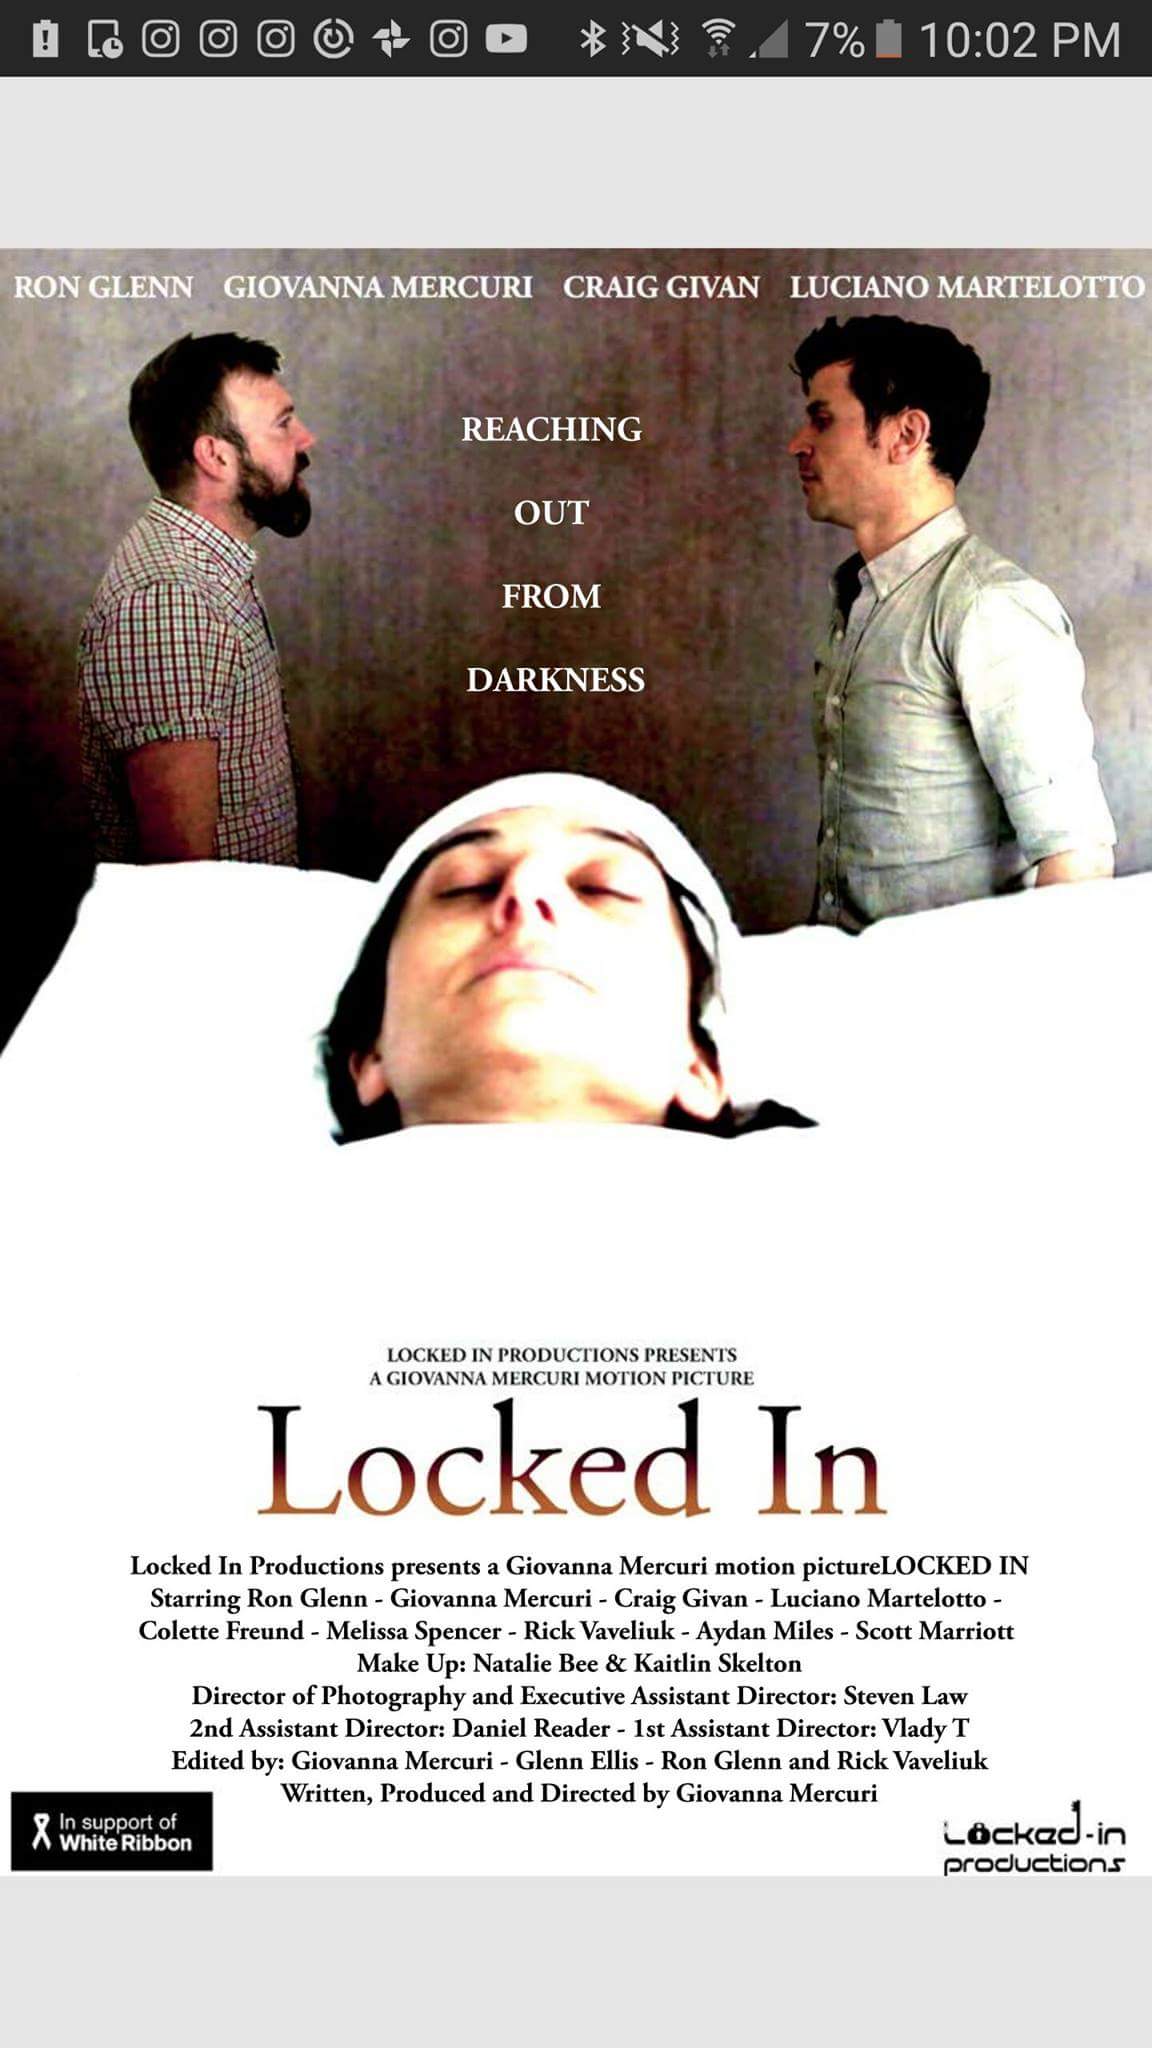 Locked in (2017)